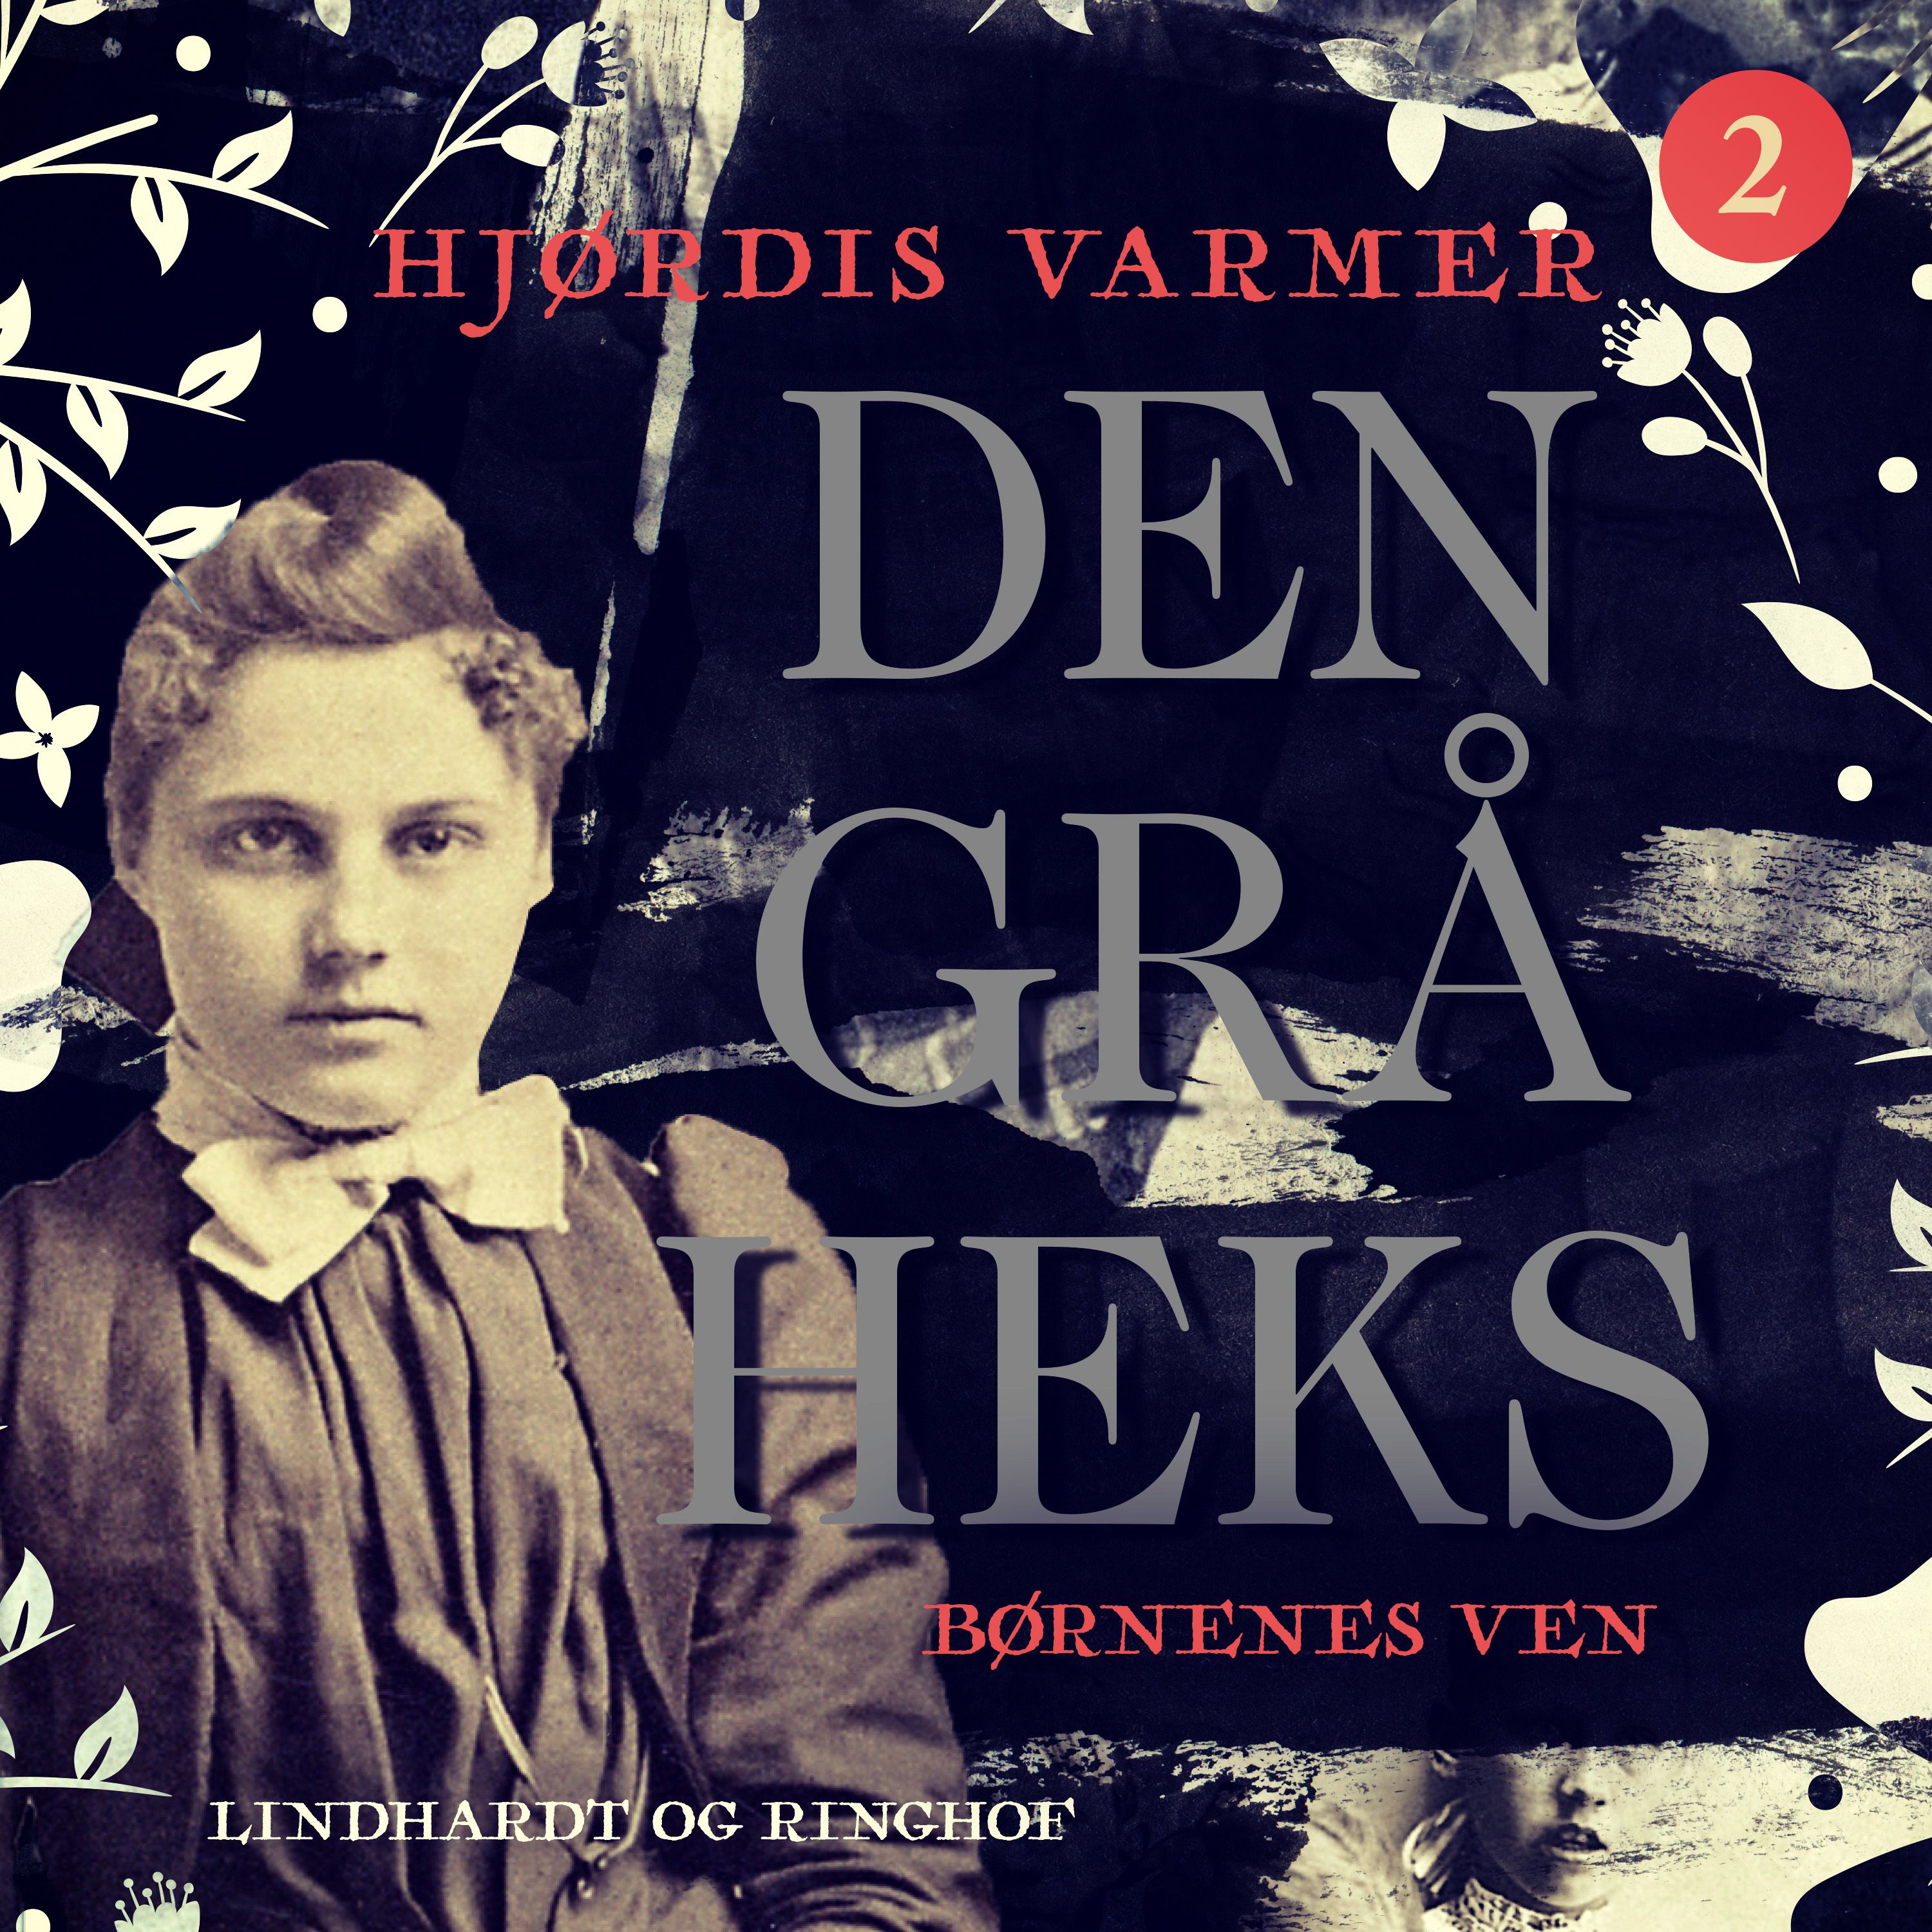 Den grå heks (2) - Børnenes ven, audiobook by Hjørdis Varmer